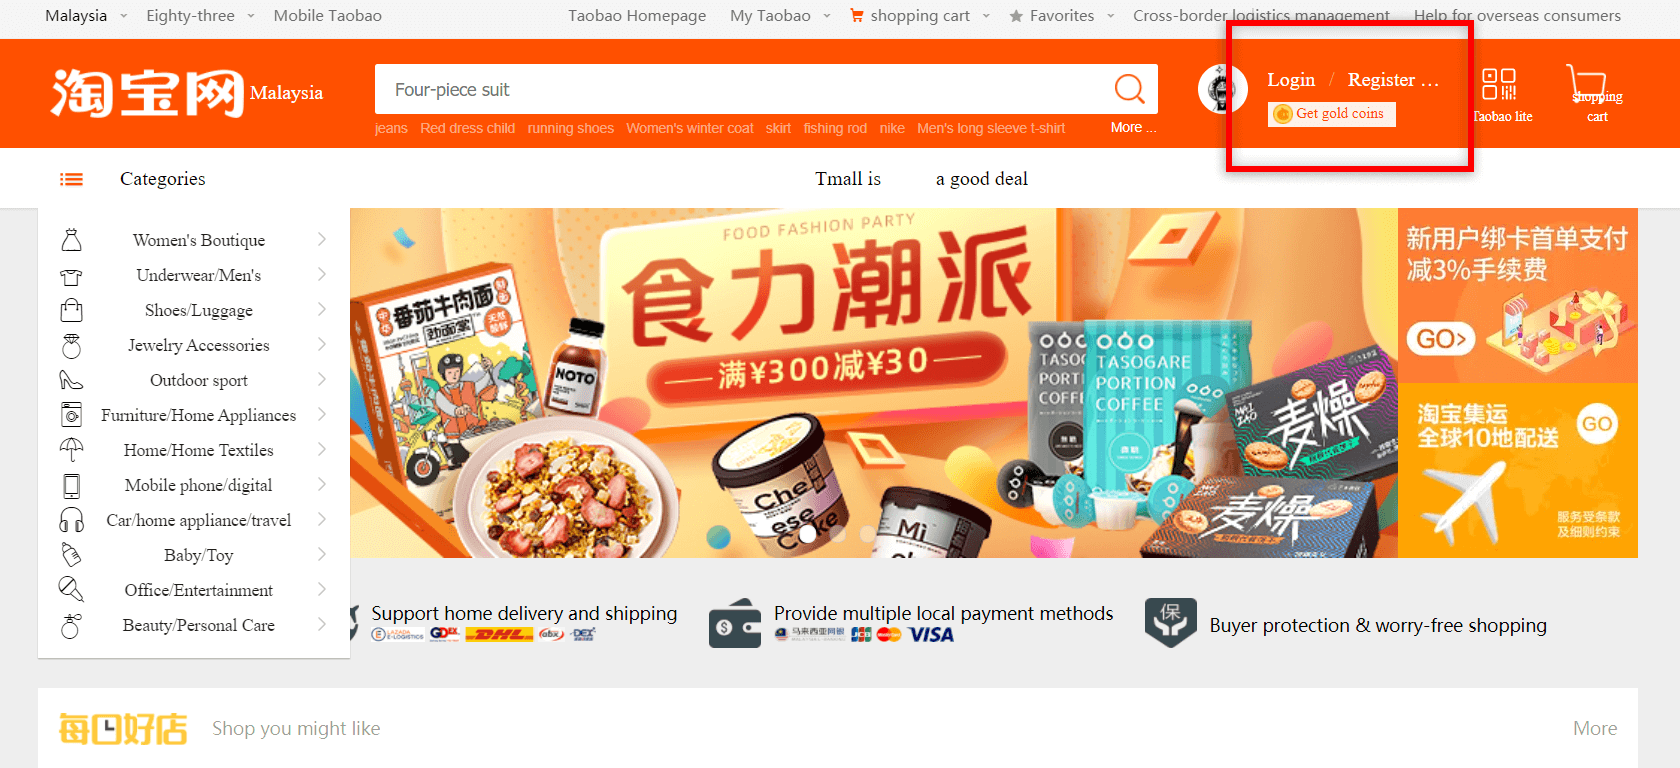 Log masuk ke Taobao